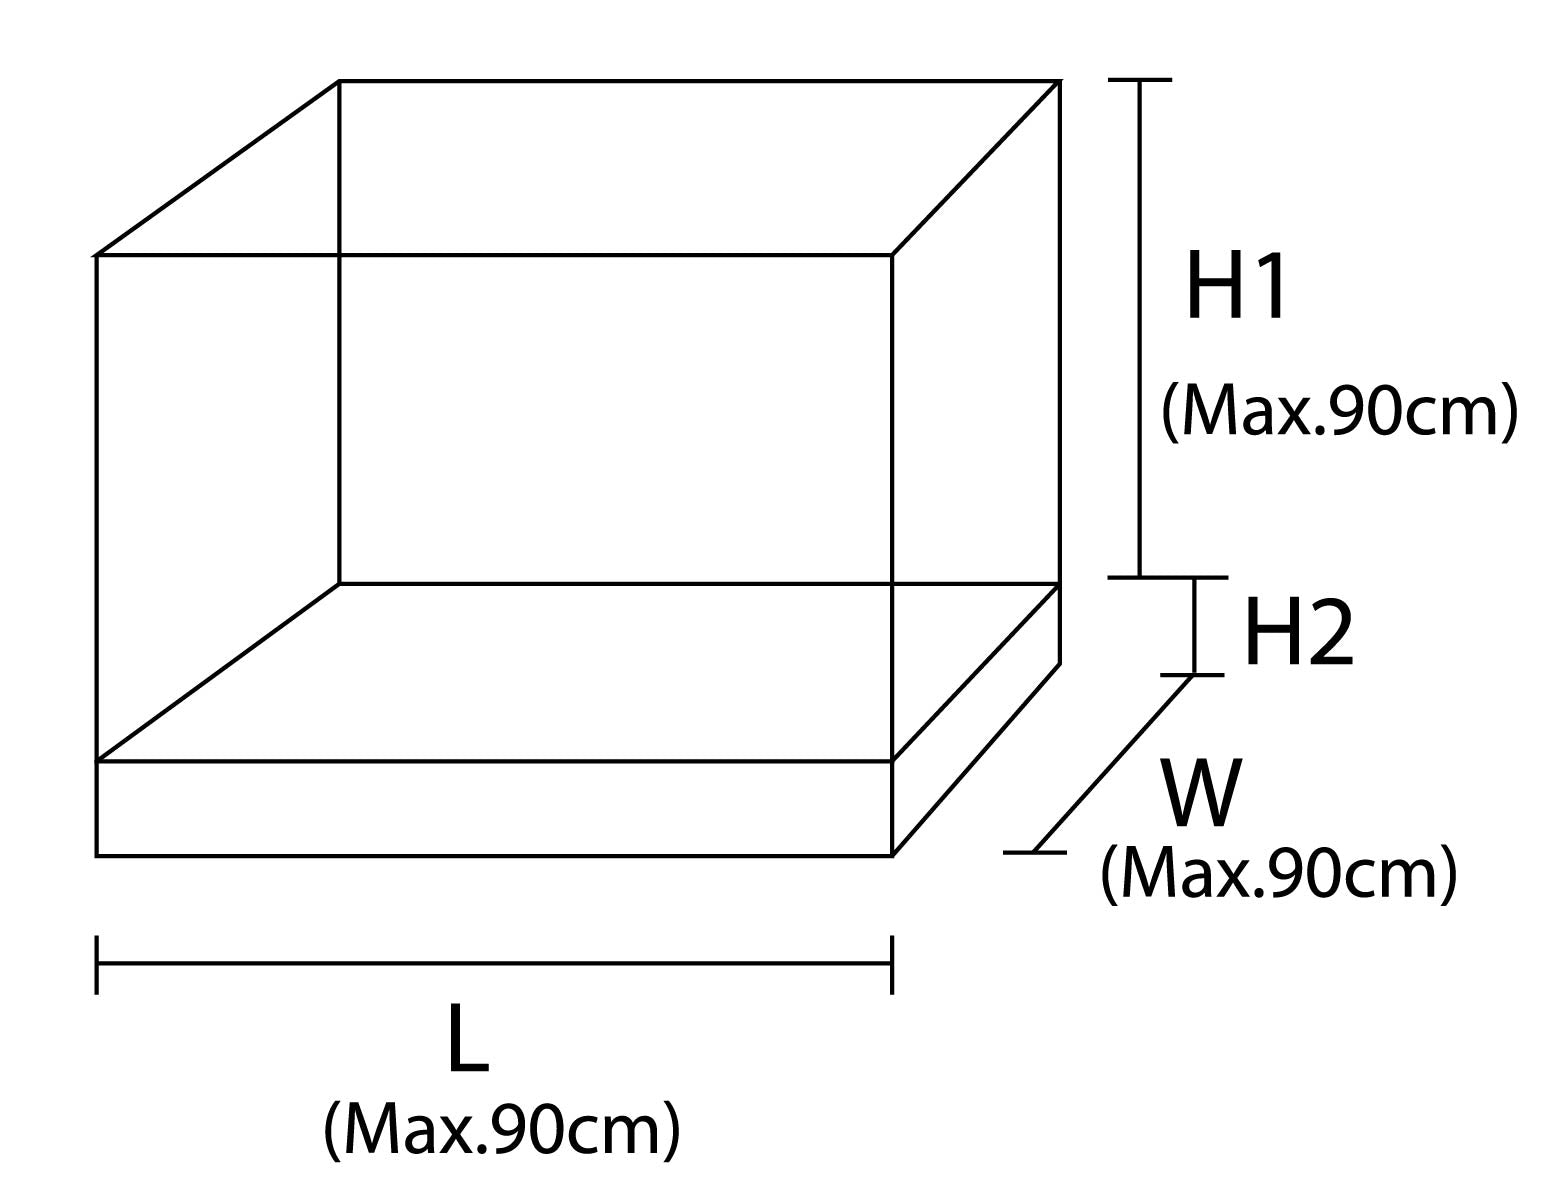 Showcase Type2 diagram